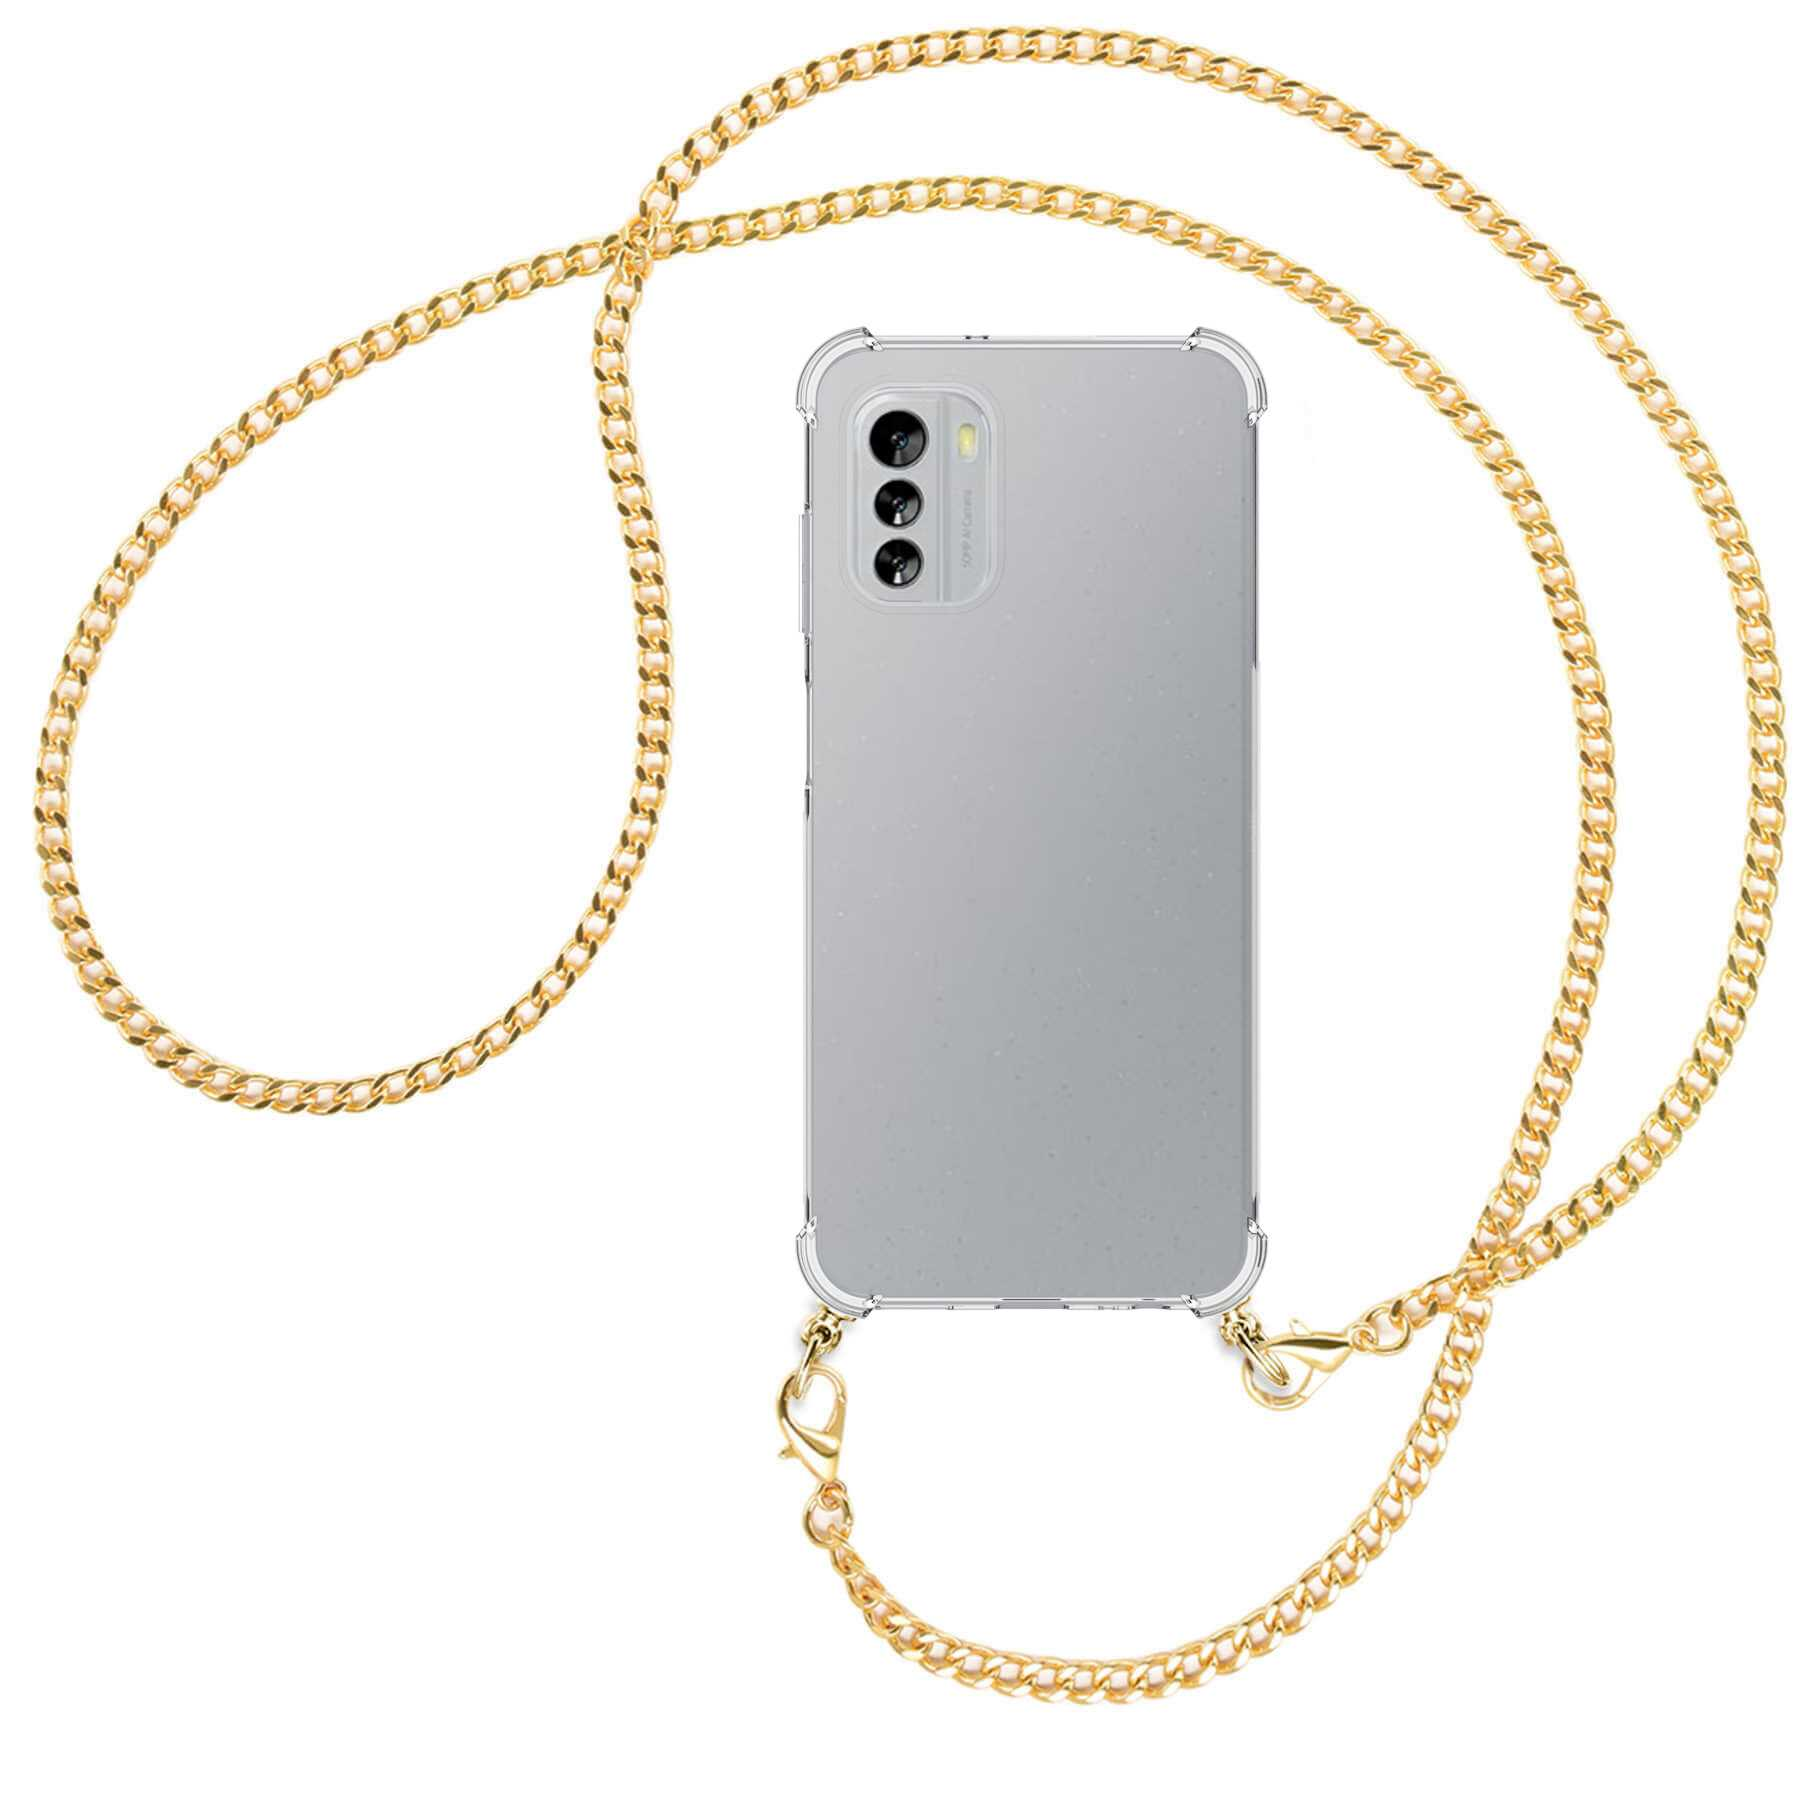 5G, (gold) Nokia, G60 Metallkette, ENERGY MTB Kette MORE Umhänge-Hülle Backcover, mit